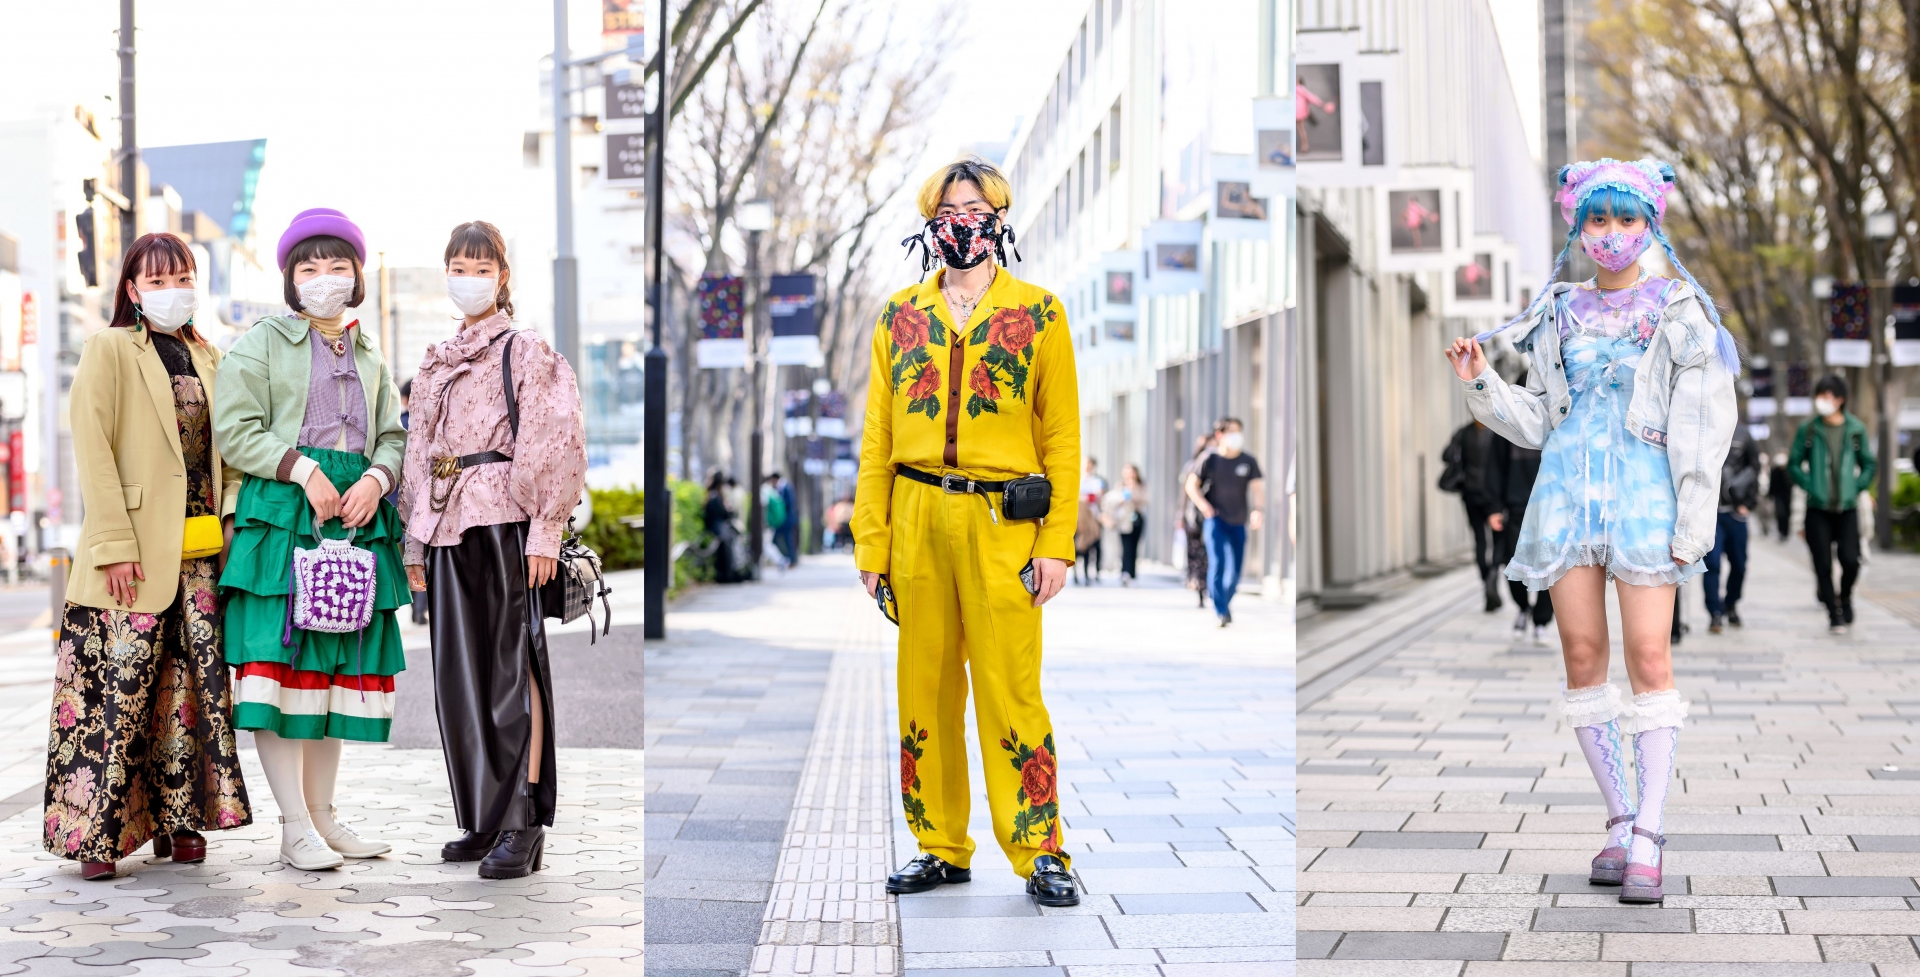 Đường phố Nhật Bản không thiếu những chàng trai cô gái có lối ăn mặc khác biệt, thậm chí lập dị.